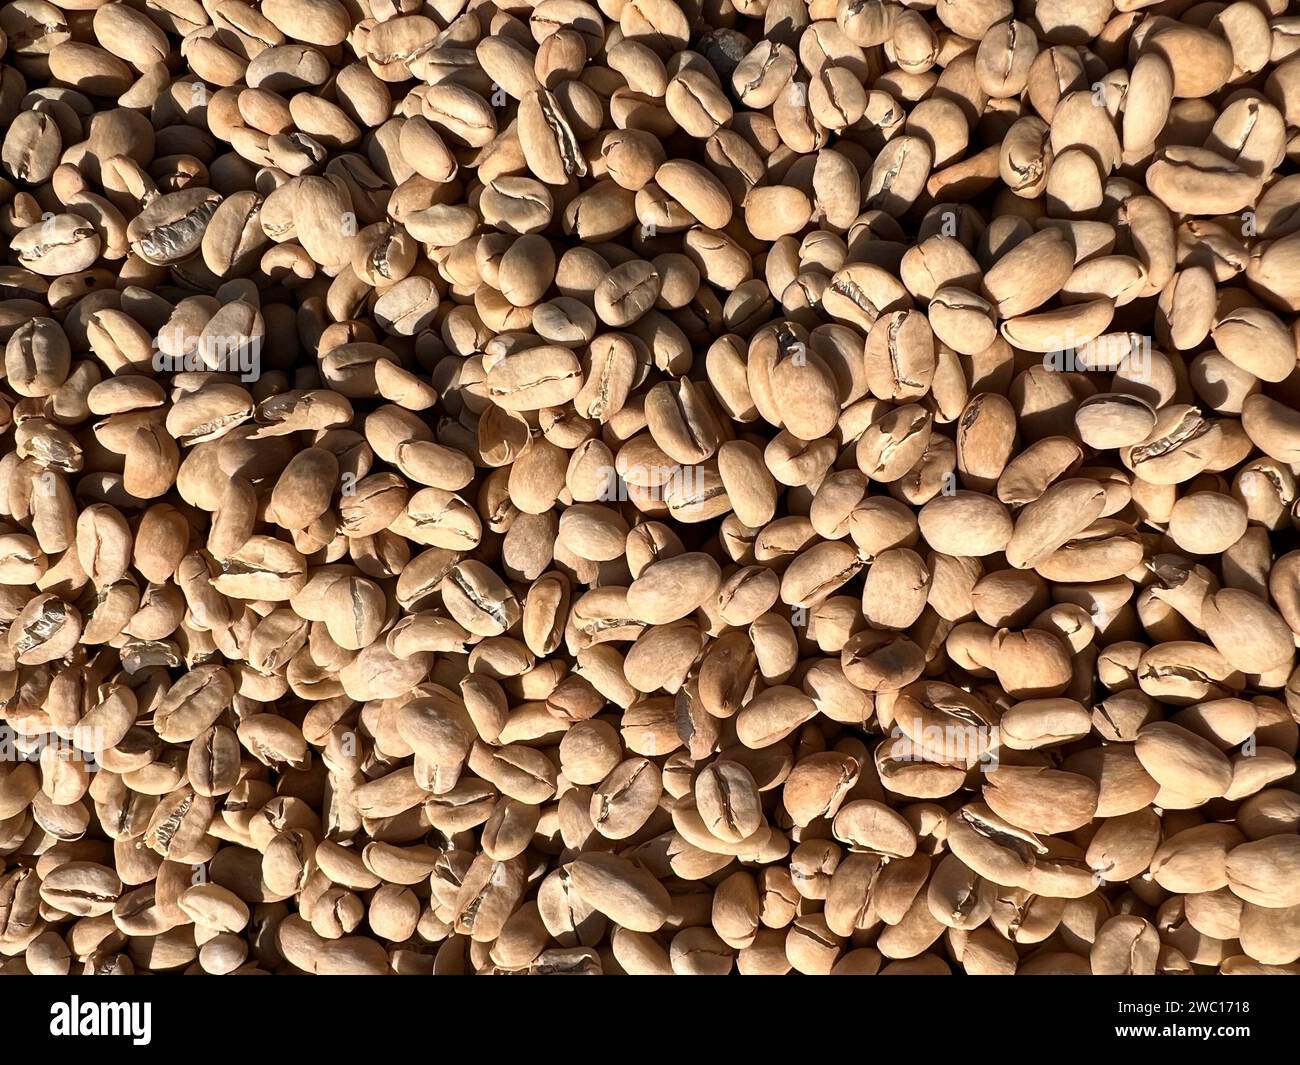 Ethiopian séché et peler le grain de café de coquille couché pour sécher au soleil. Bona Zuria, Éthiopie Banque D'Images